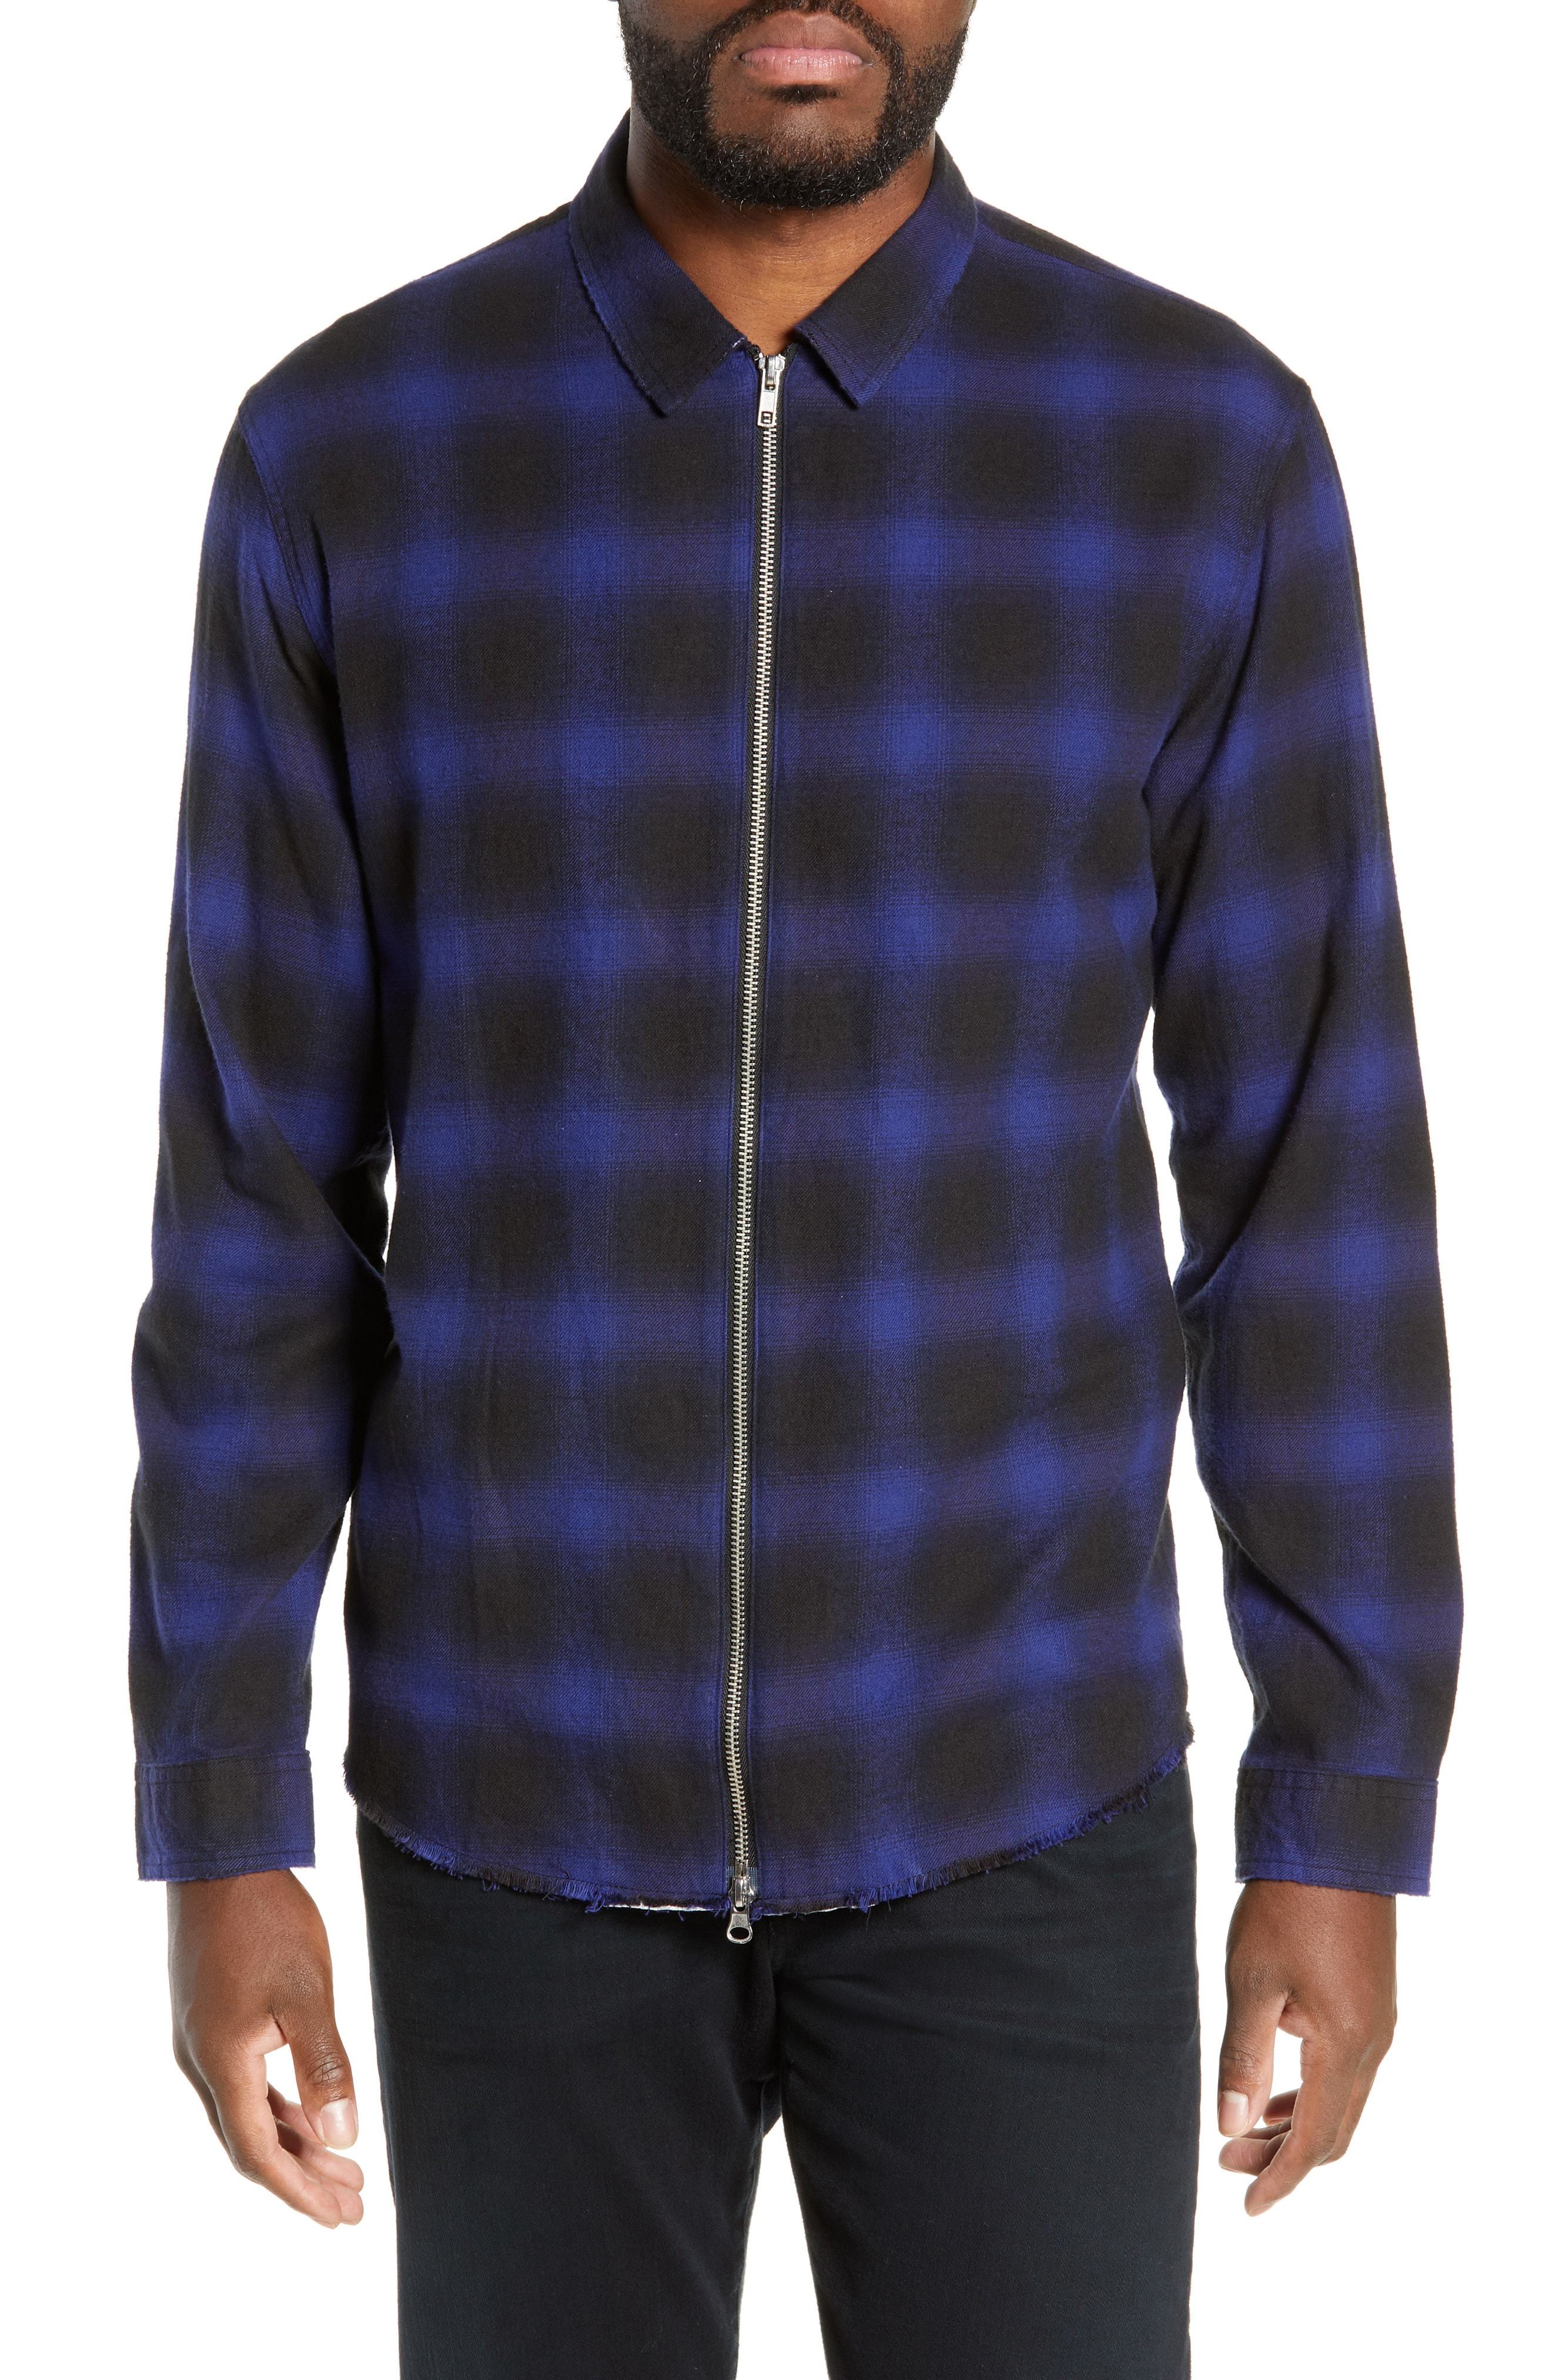 The Kooples Zip Flannel Jacket, $298 